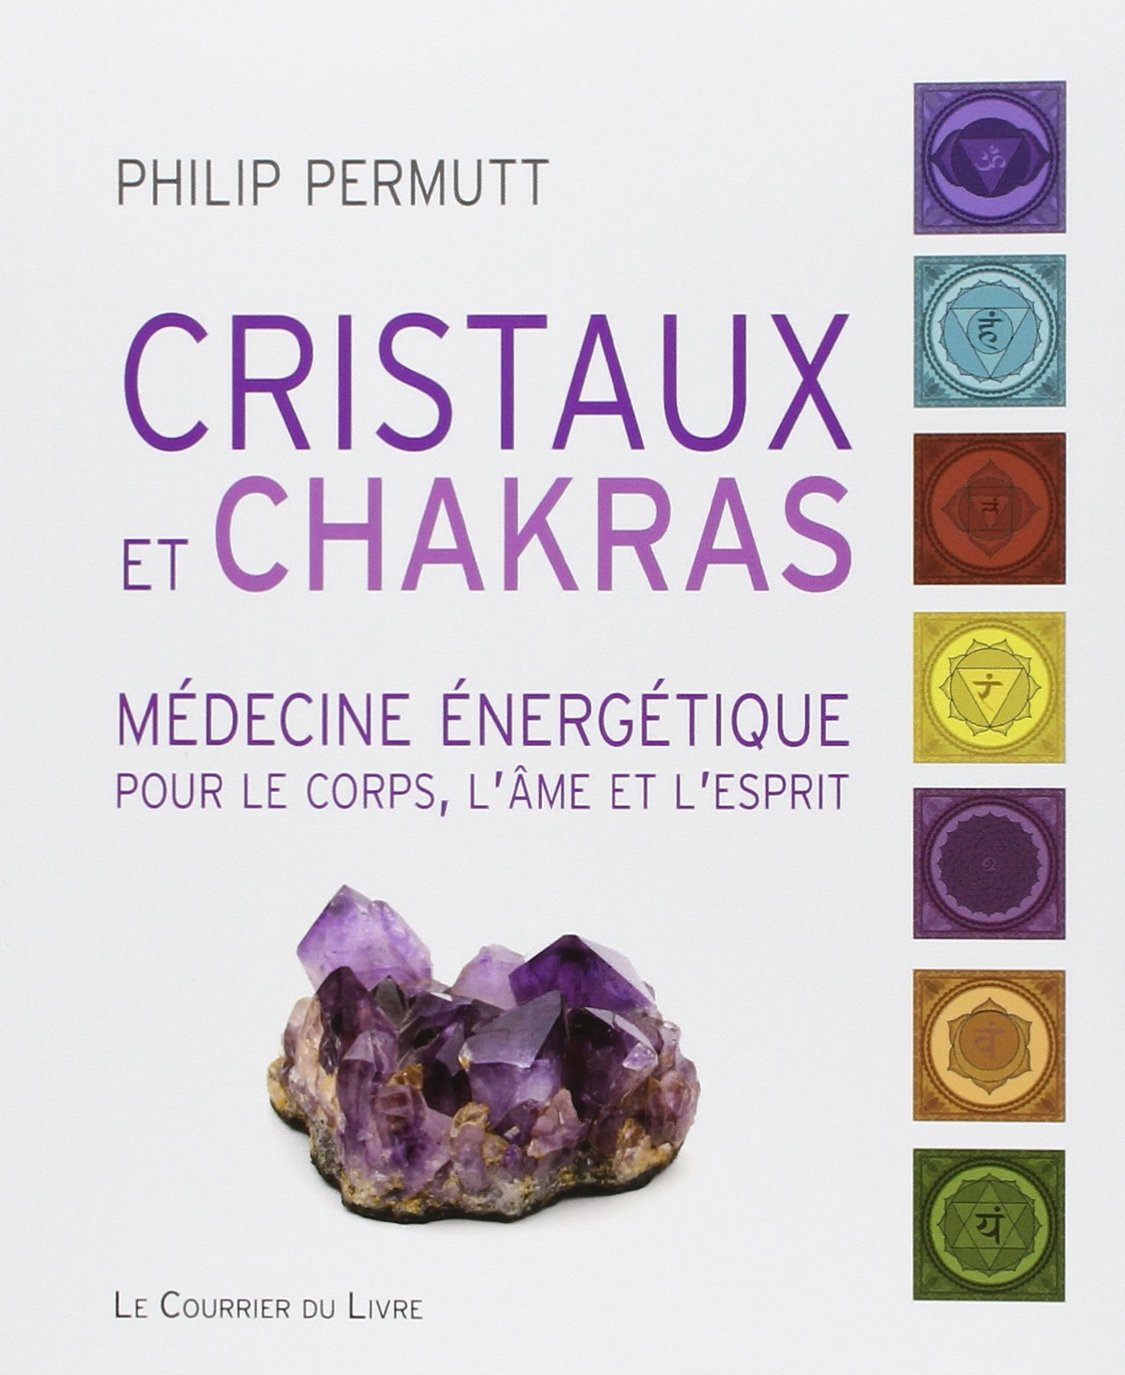 Cristaux et chakras : médecine énergétique pour le corps, l'âme et l'esprit